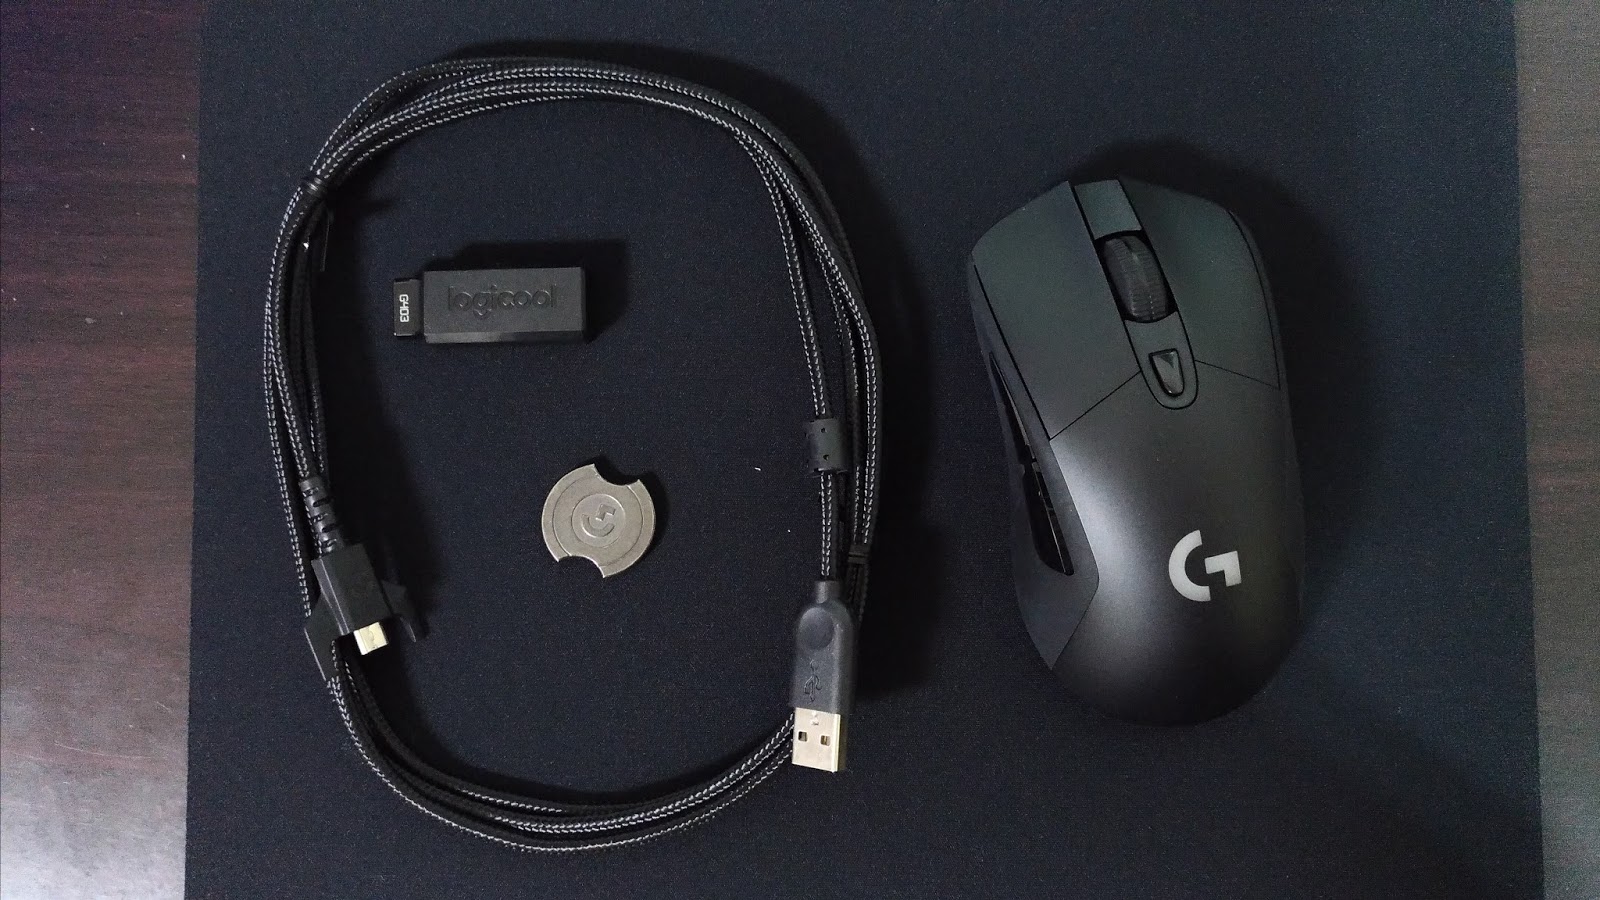 ロジクール G403wl Prodigy Wireless ワイヤレスゲーミングマウス購入 Costview